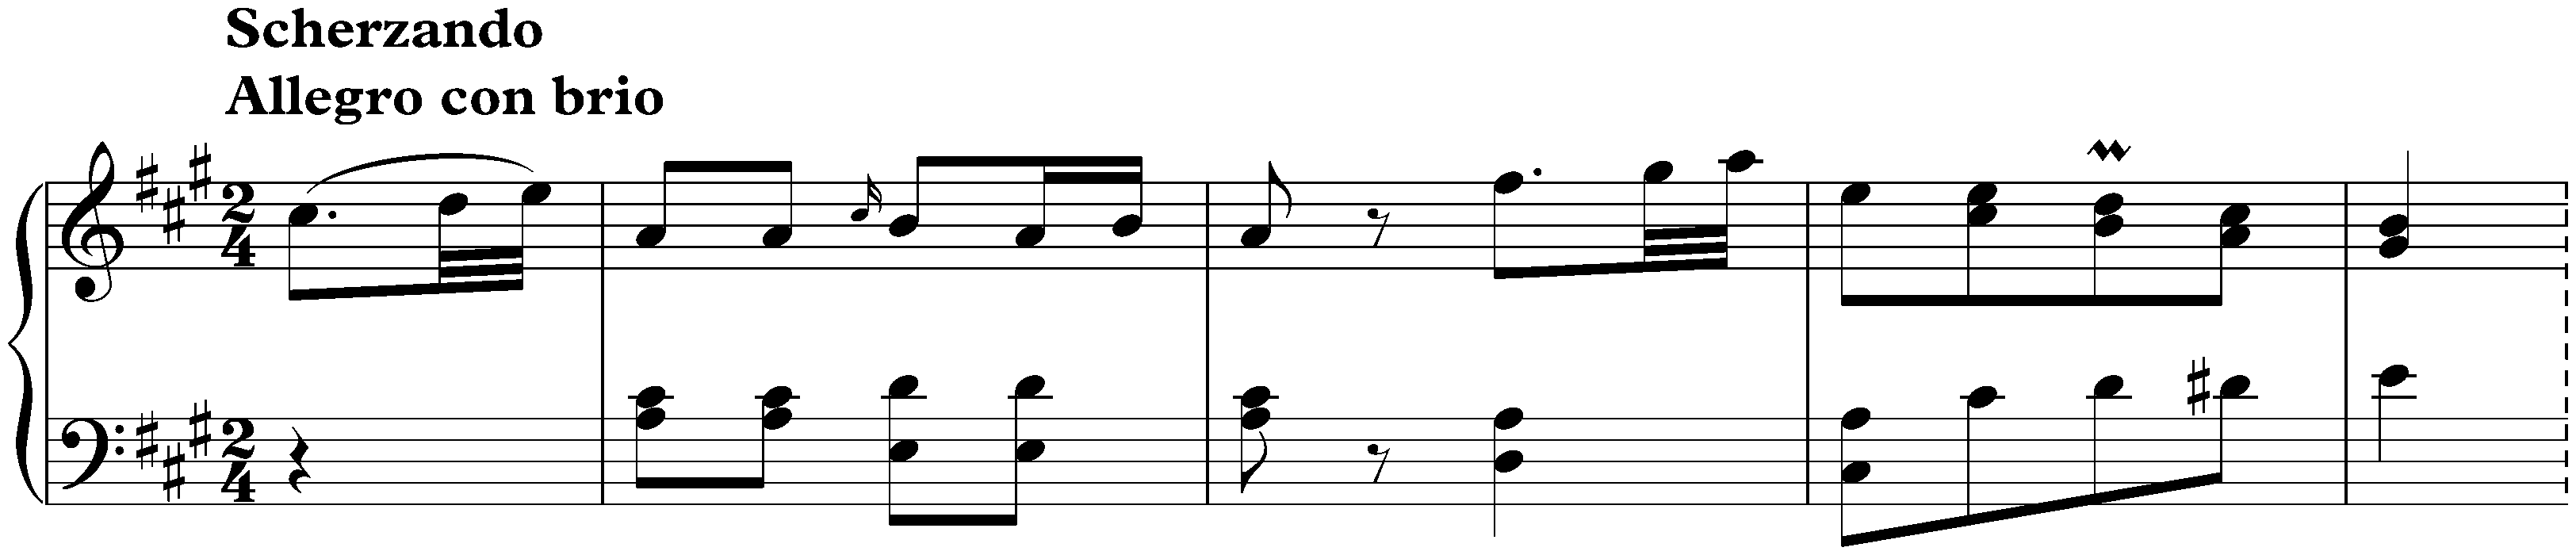 Sonata in C-sharp minor, Hob. XVI:36; 2. Scherzando: Allegro con brio